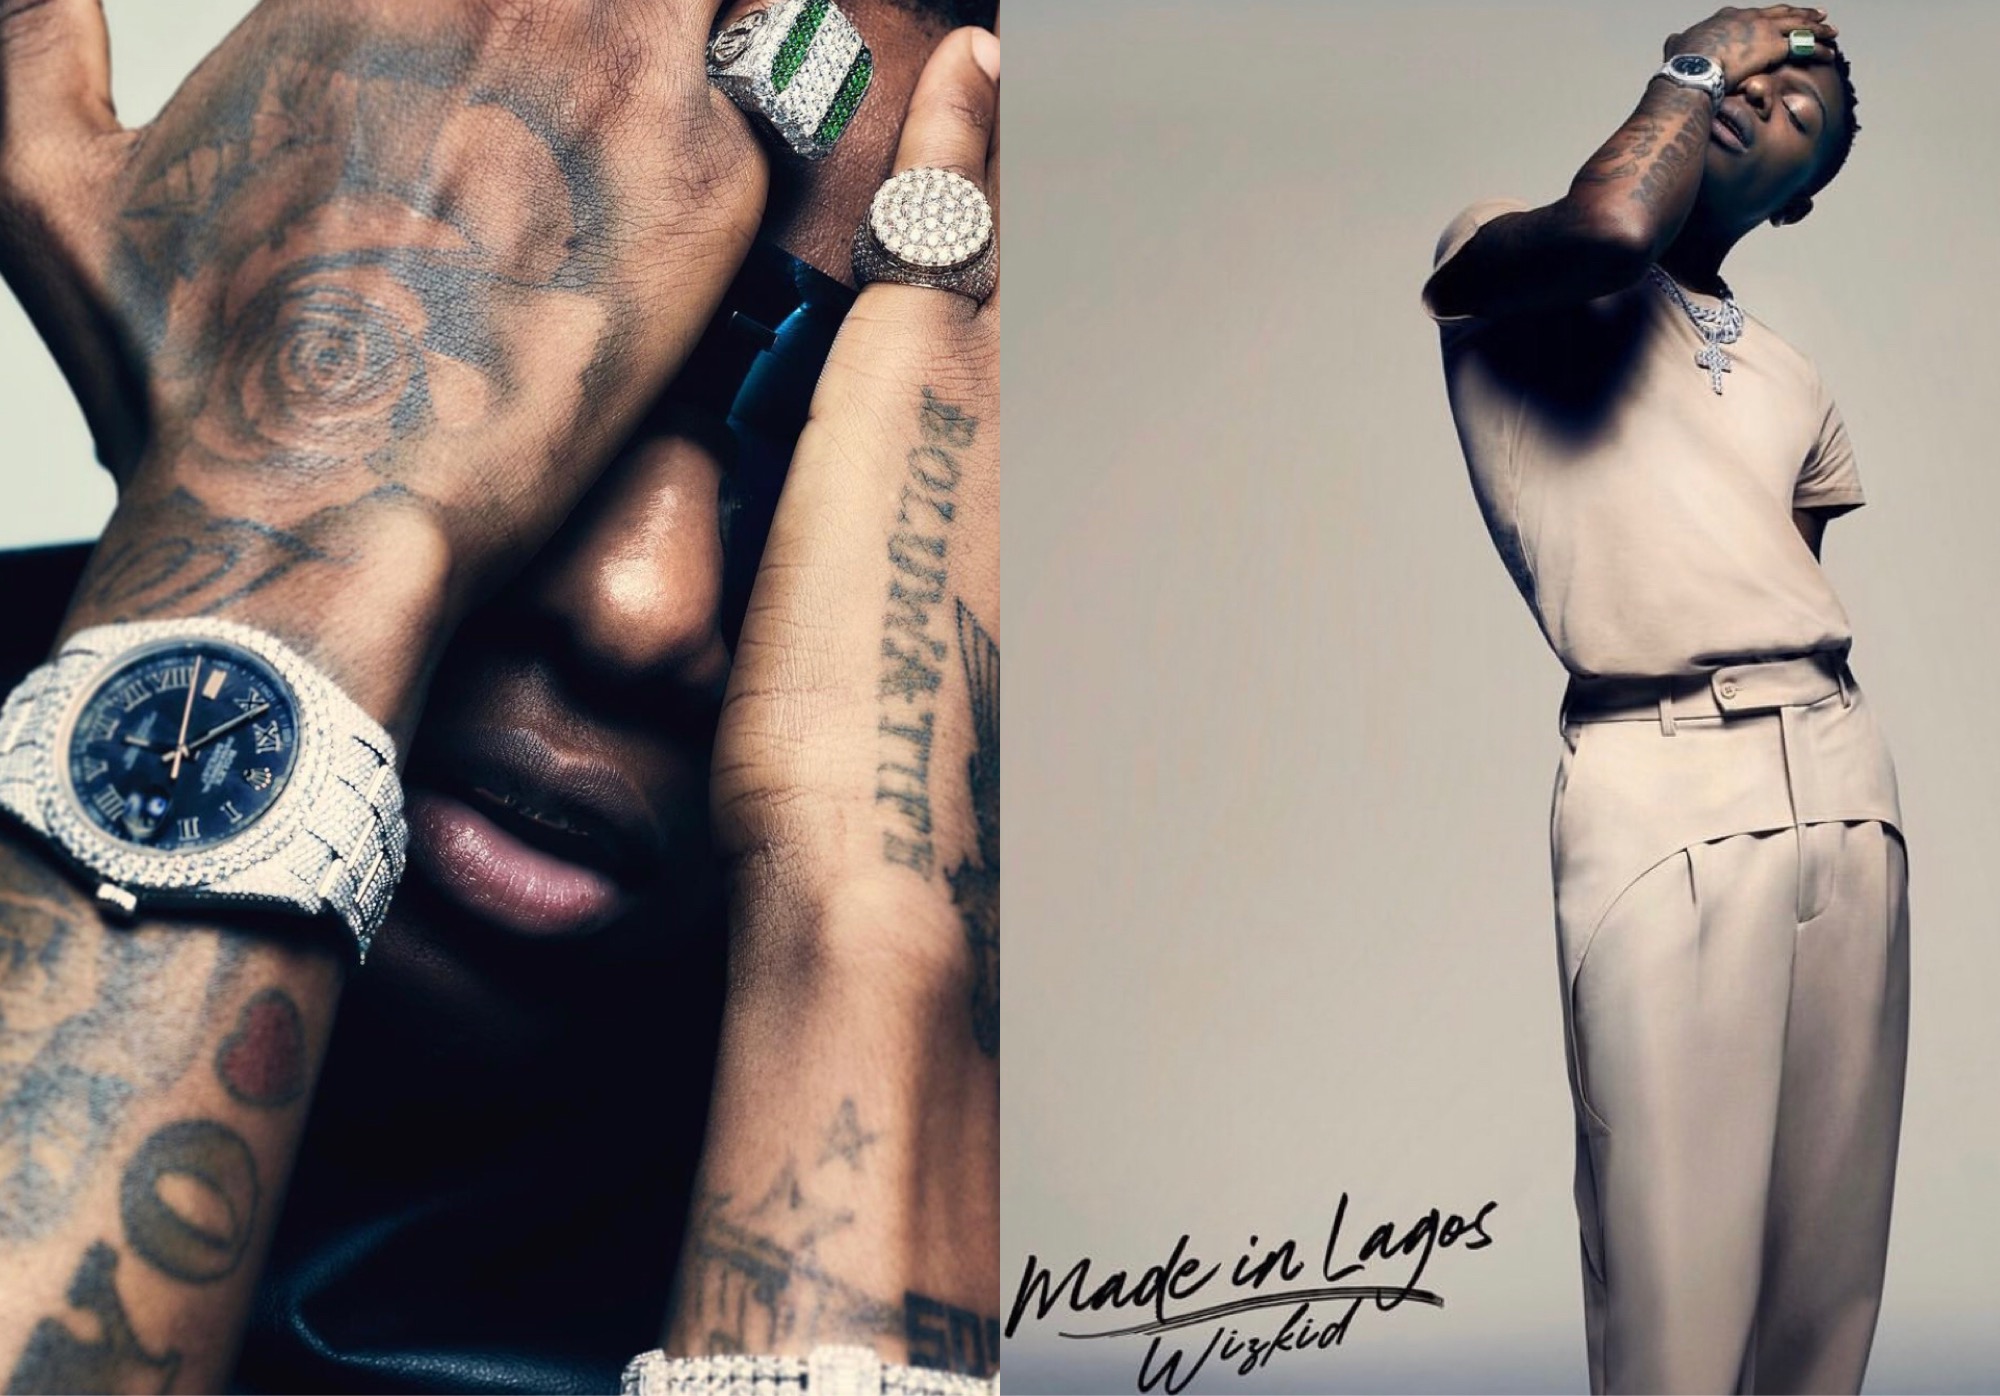 Wizkid's 'Made In Lagos' Album Surpasses 100M Streams On All Platforms